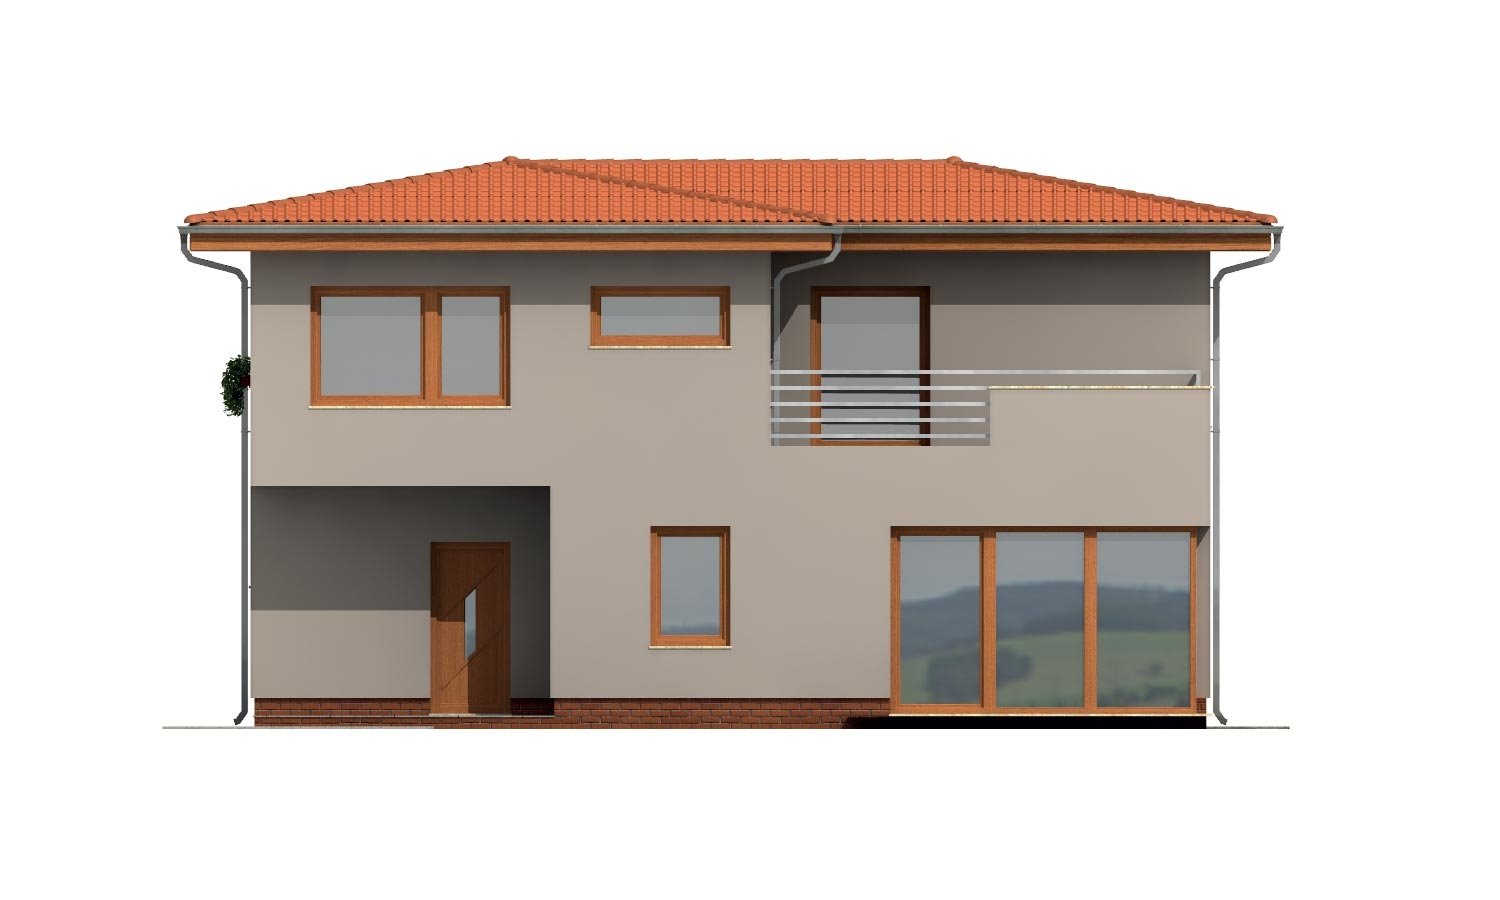 Pohľad 3. - Moderní poschoďový dům s garáží a obytnou terasou na patře.